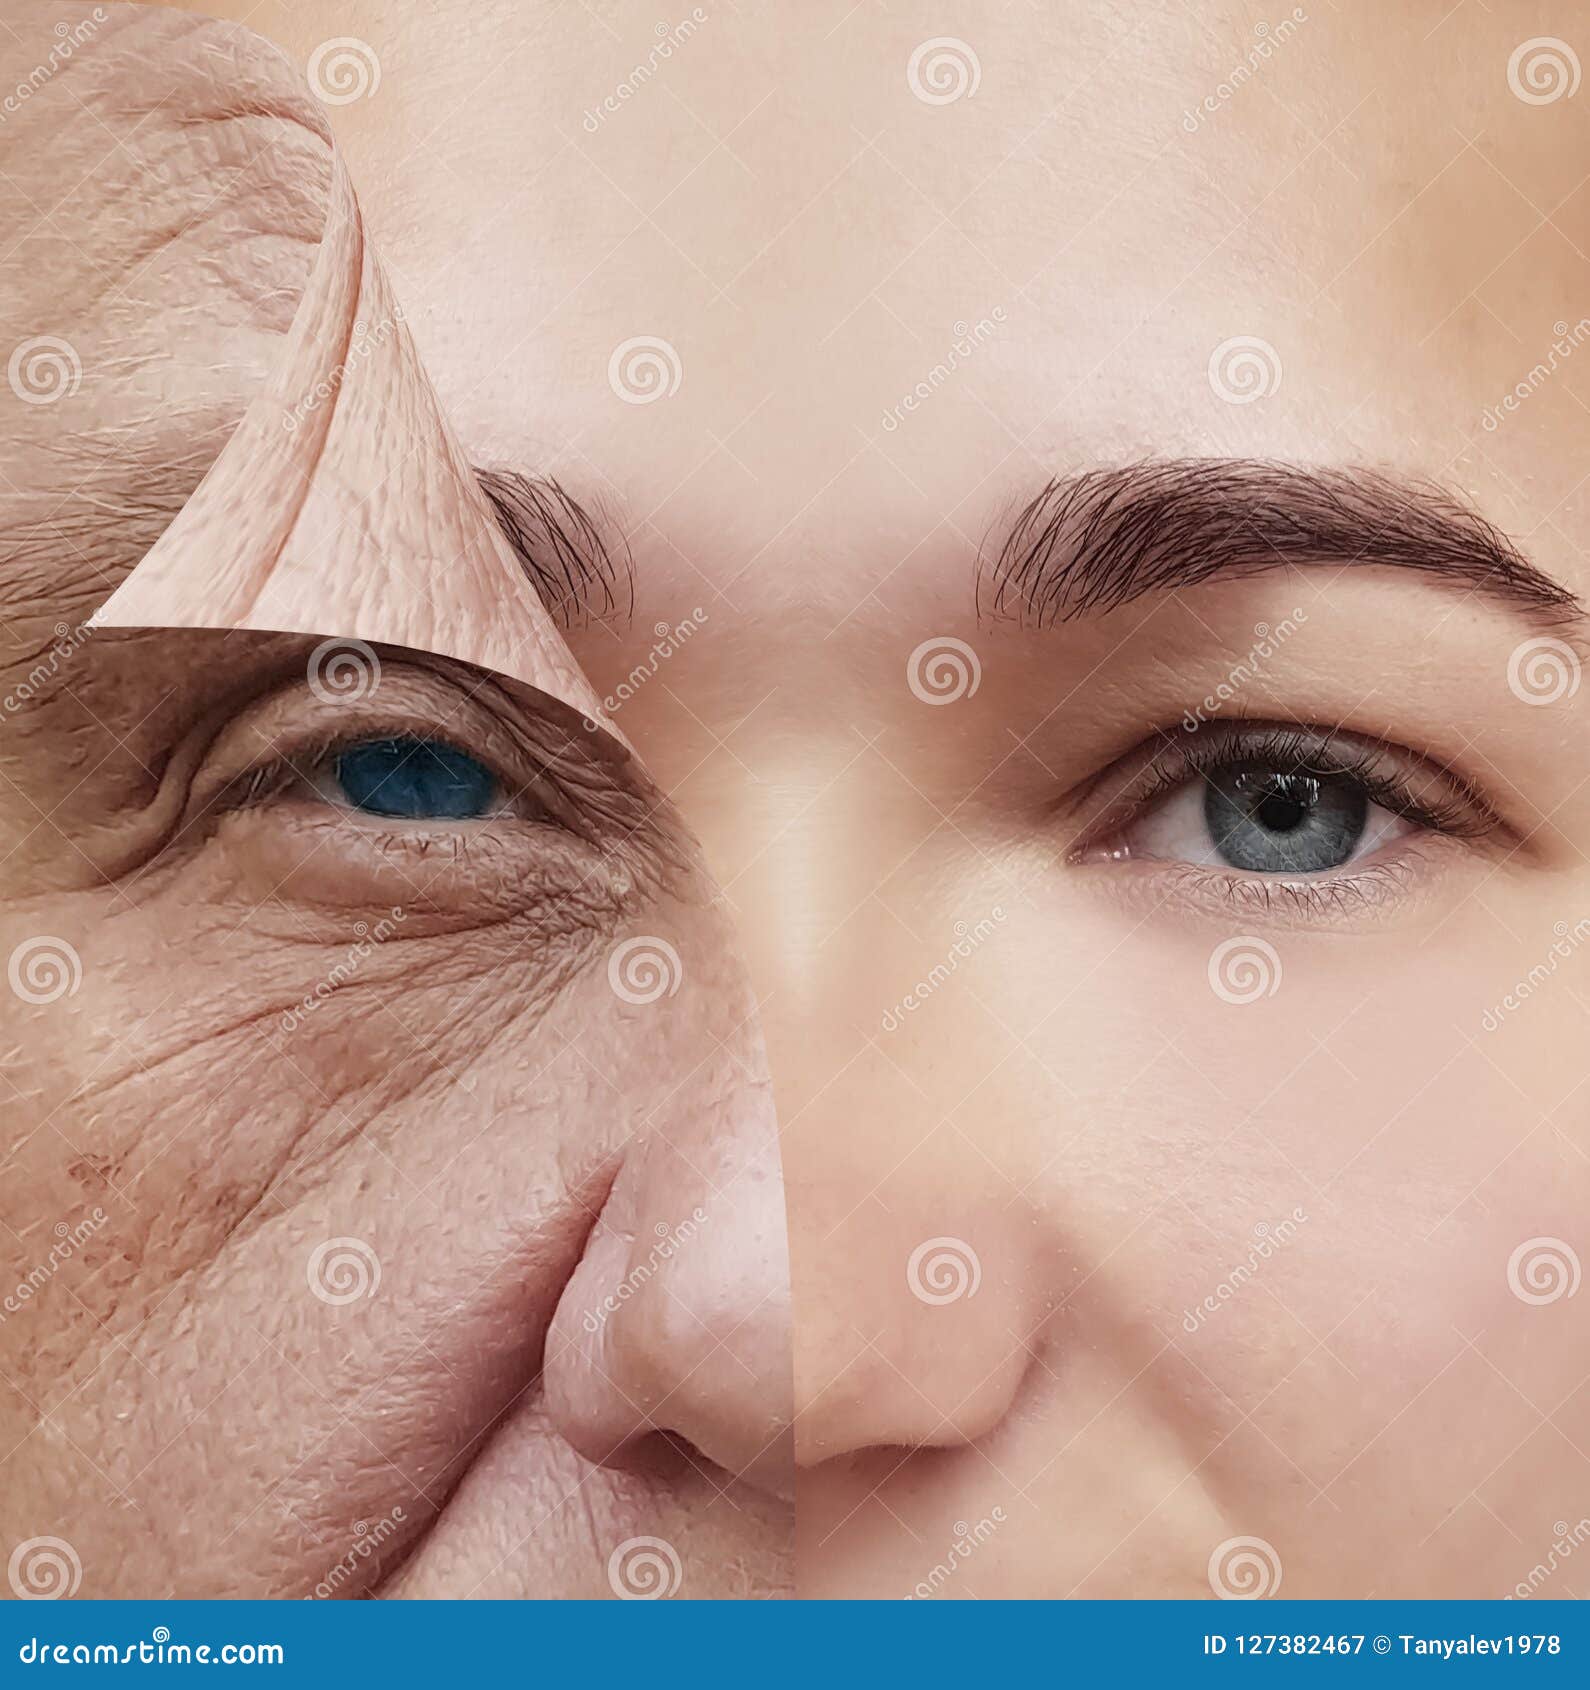 Gesicht älter machen online kostenlos